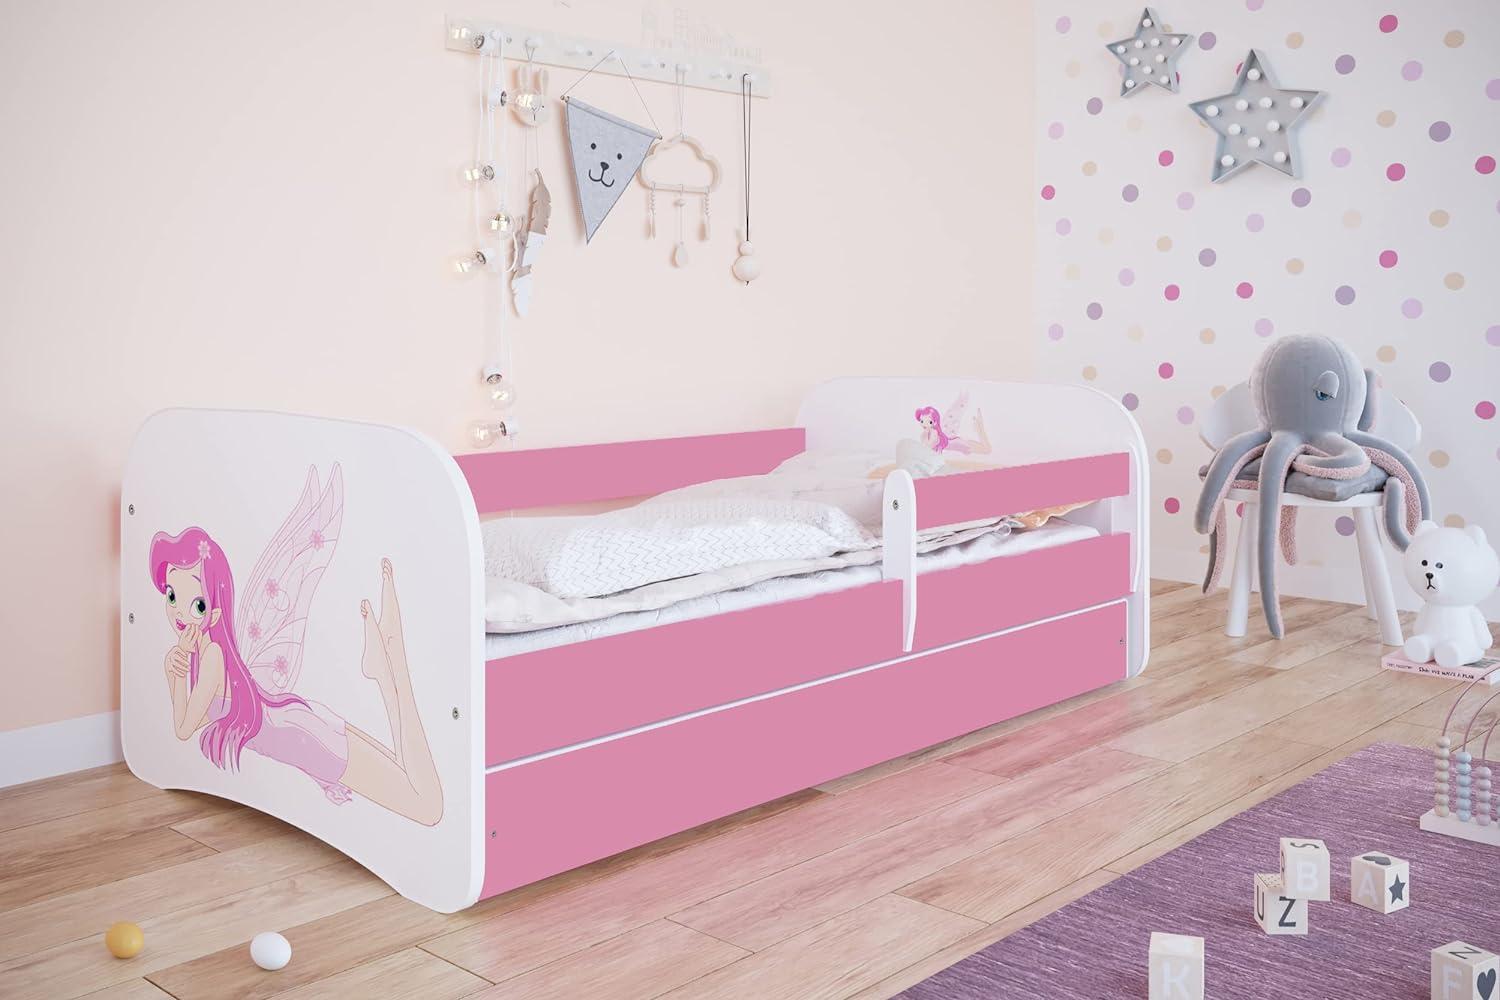 Kocot Kids 'Fee mit Flügeln' Einzelbett pink 70x140 cm inkl. Rausfallschutz, Matratze, Schublade und Lattenrost Bild 1